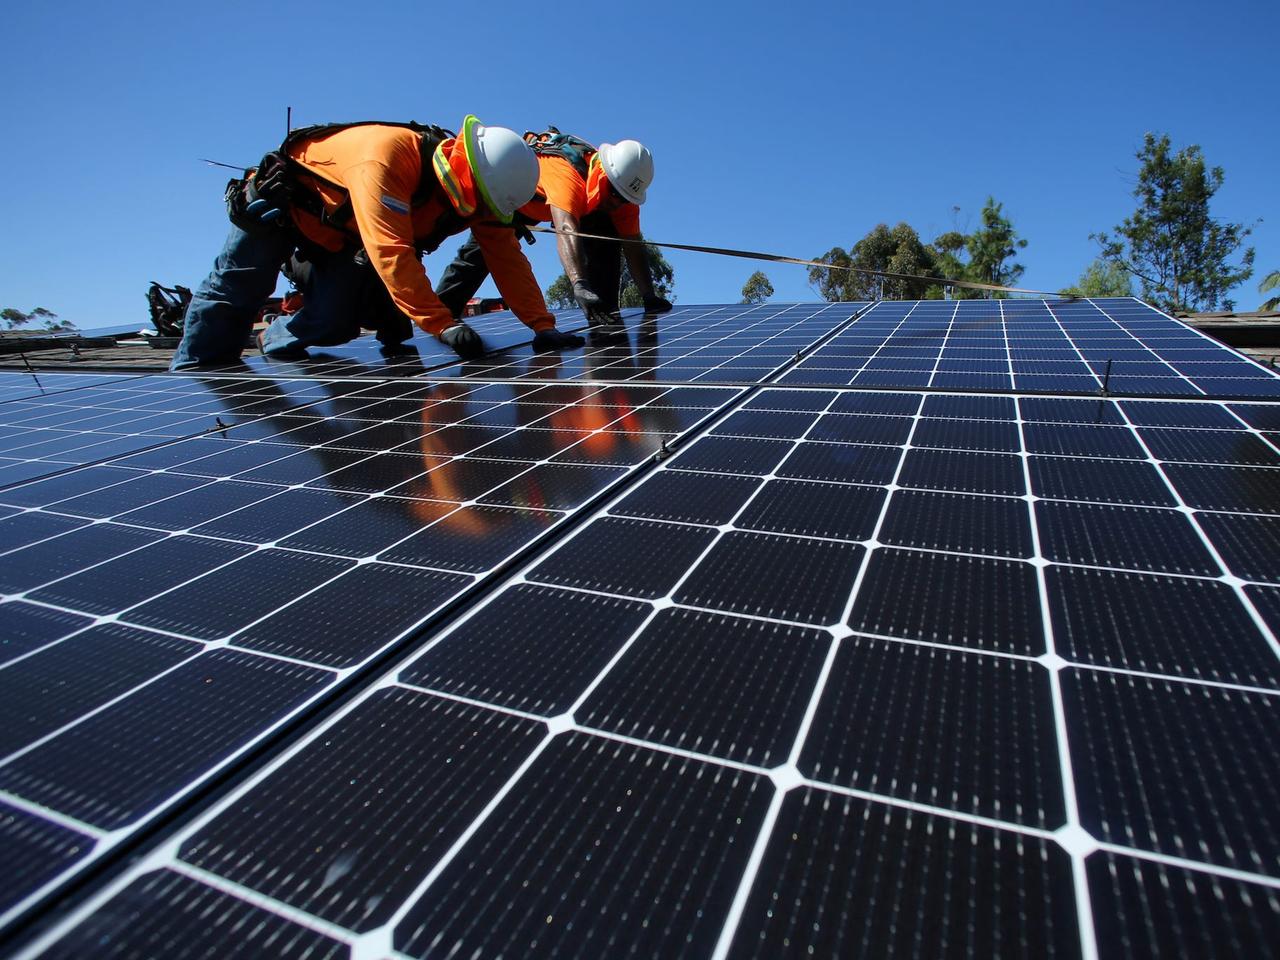 太陽光発電設備の設置技師は、2020年から2030年にかけて52.1%の雇用増加が予測されている。